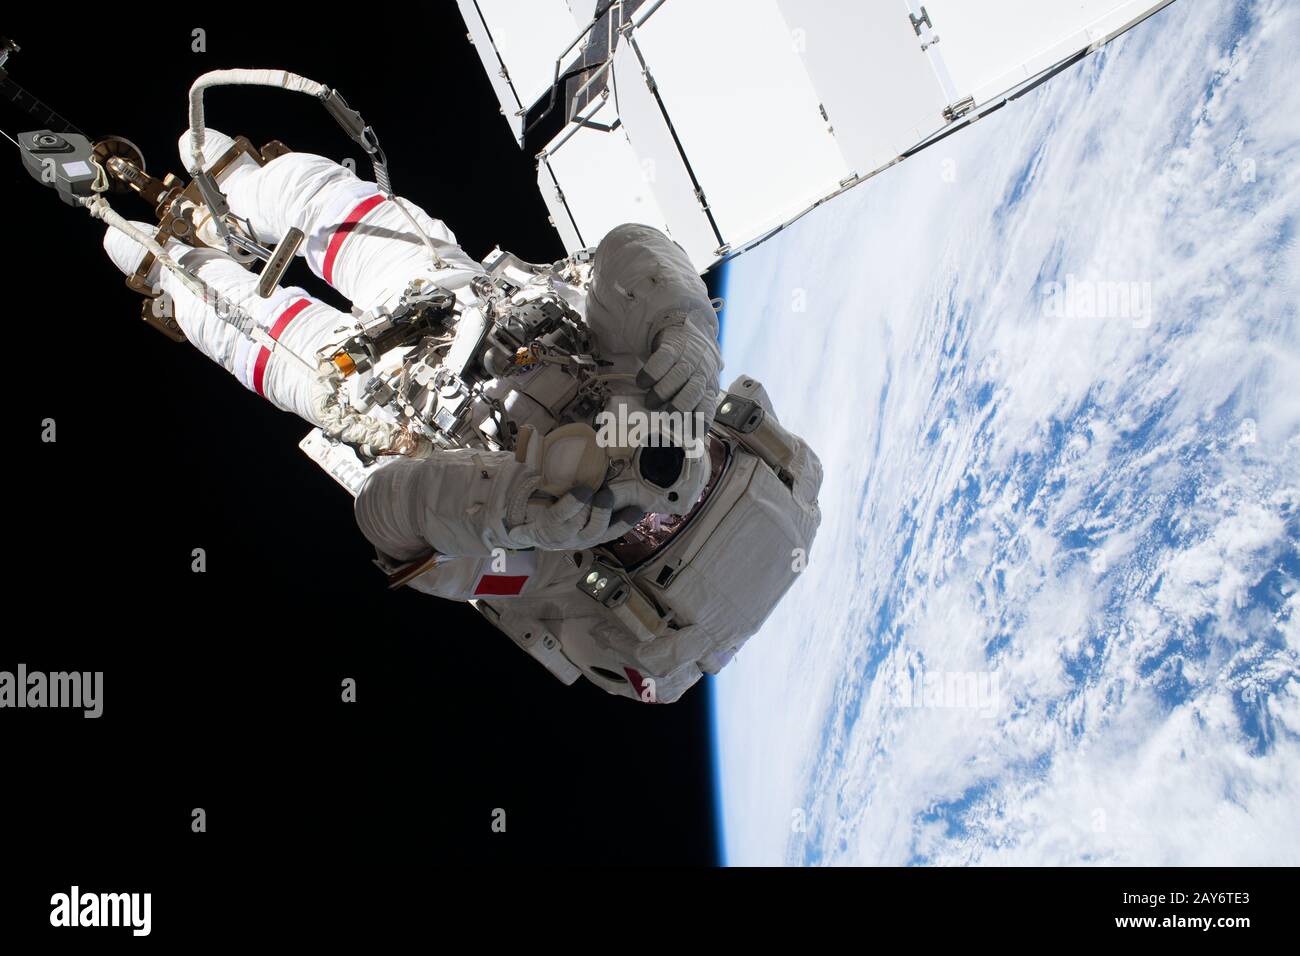 Programmi spaziali ed esplorazione. Per indicazioni sull'utilizzo della NASA: https://www.nasa.gov/multimedia/guidelines/index.html Foto Stock